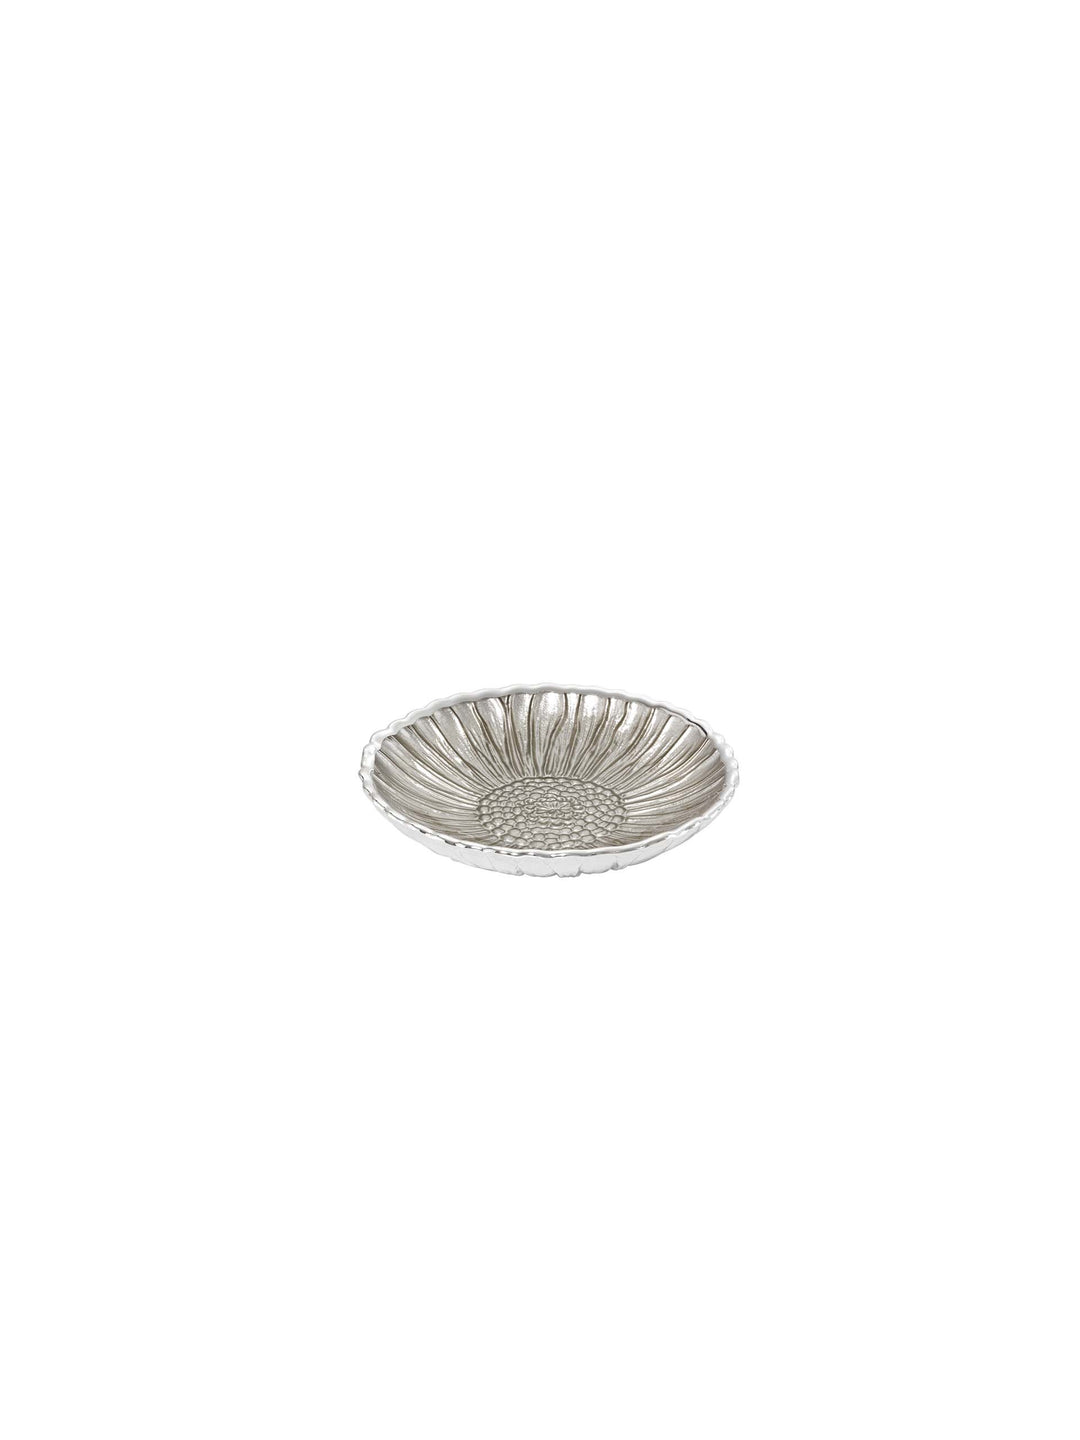 أرجنتينية مسطحة عباد الشمس D. 14cm الفضة الزجاج الرملي 0.02039